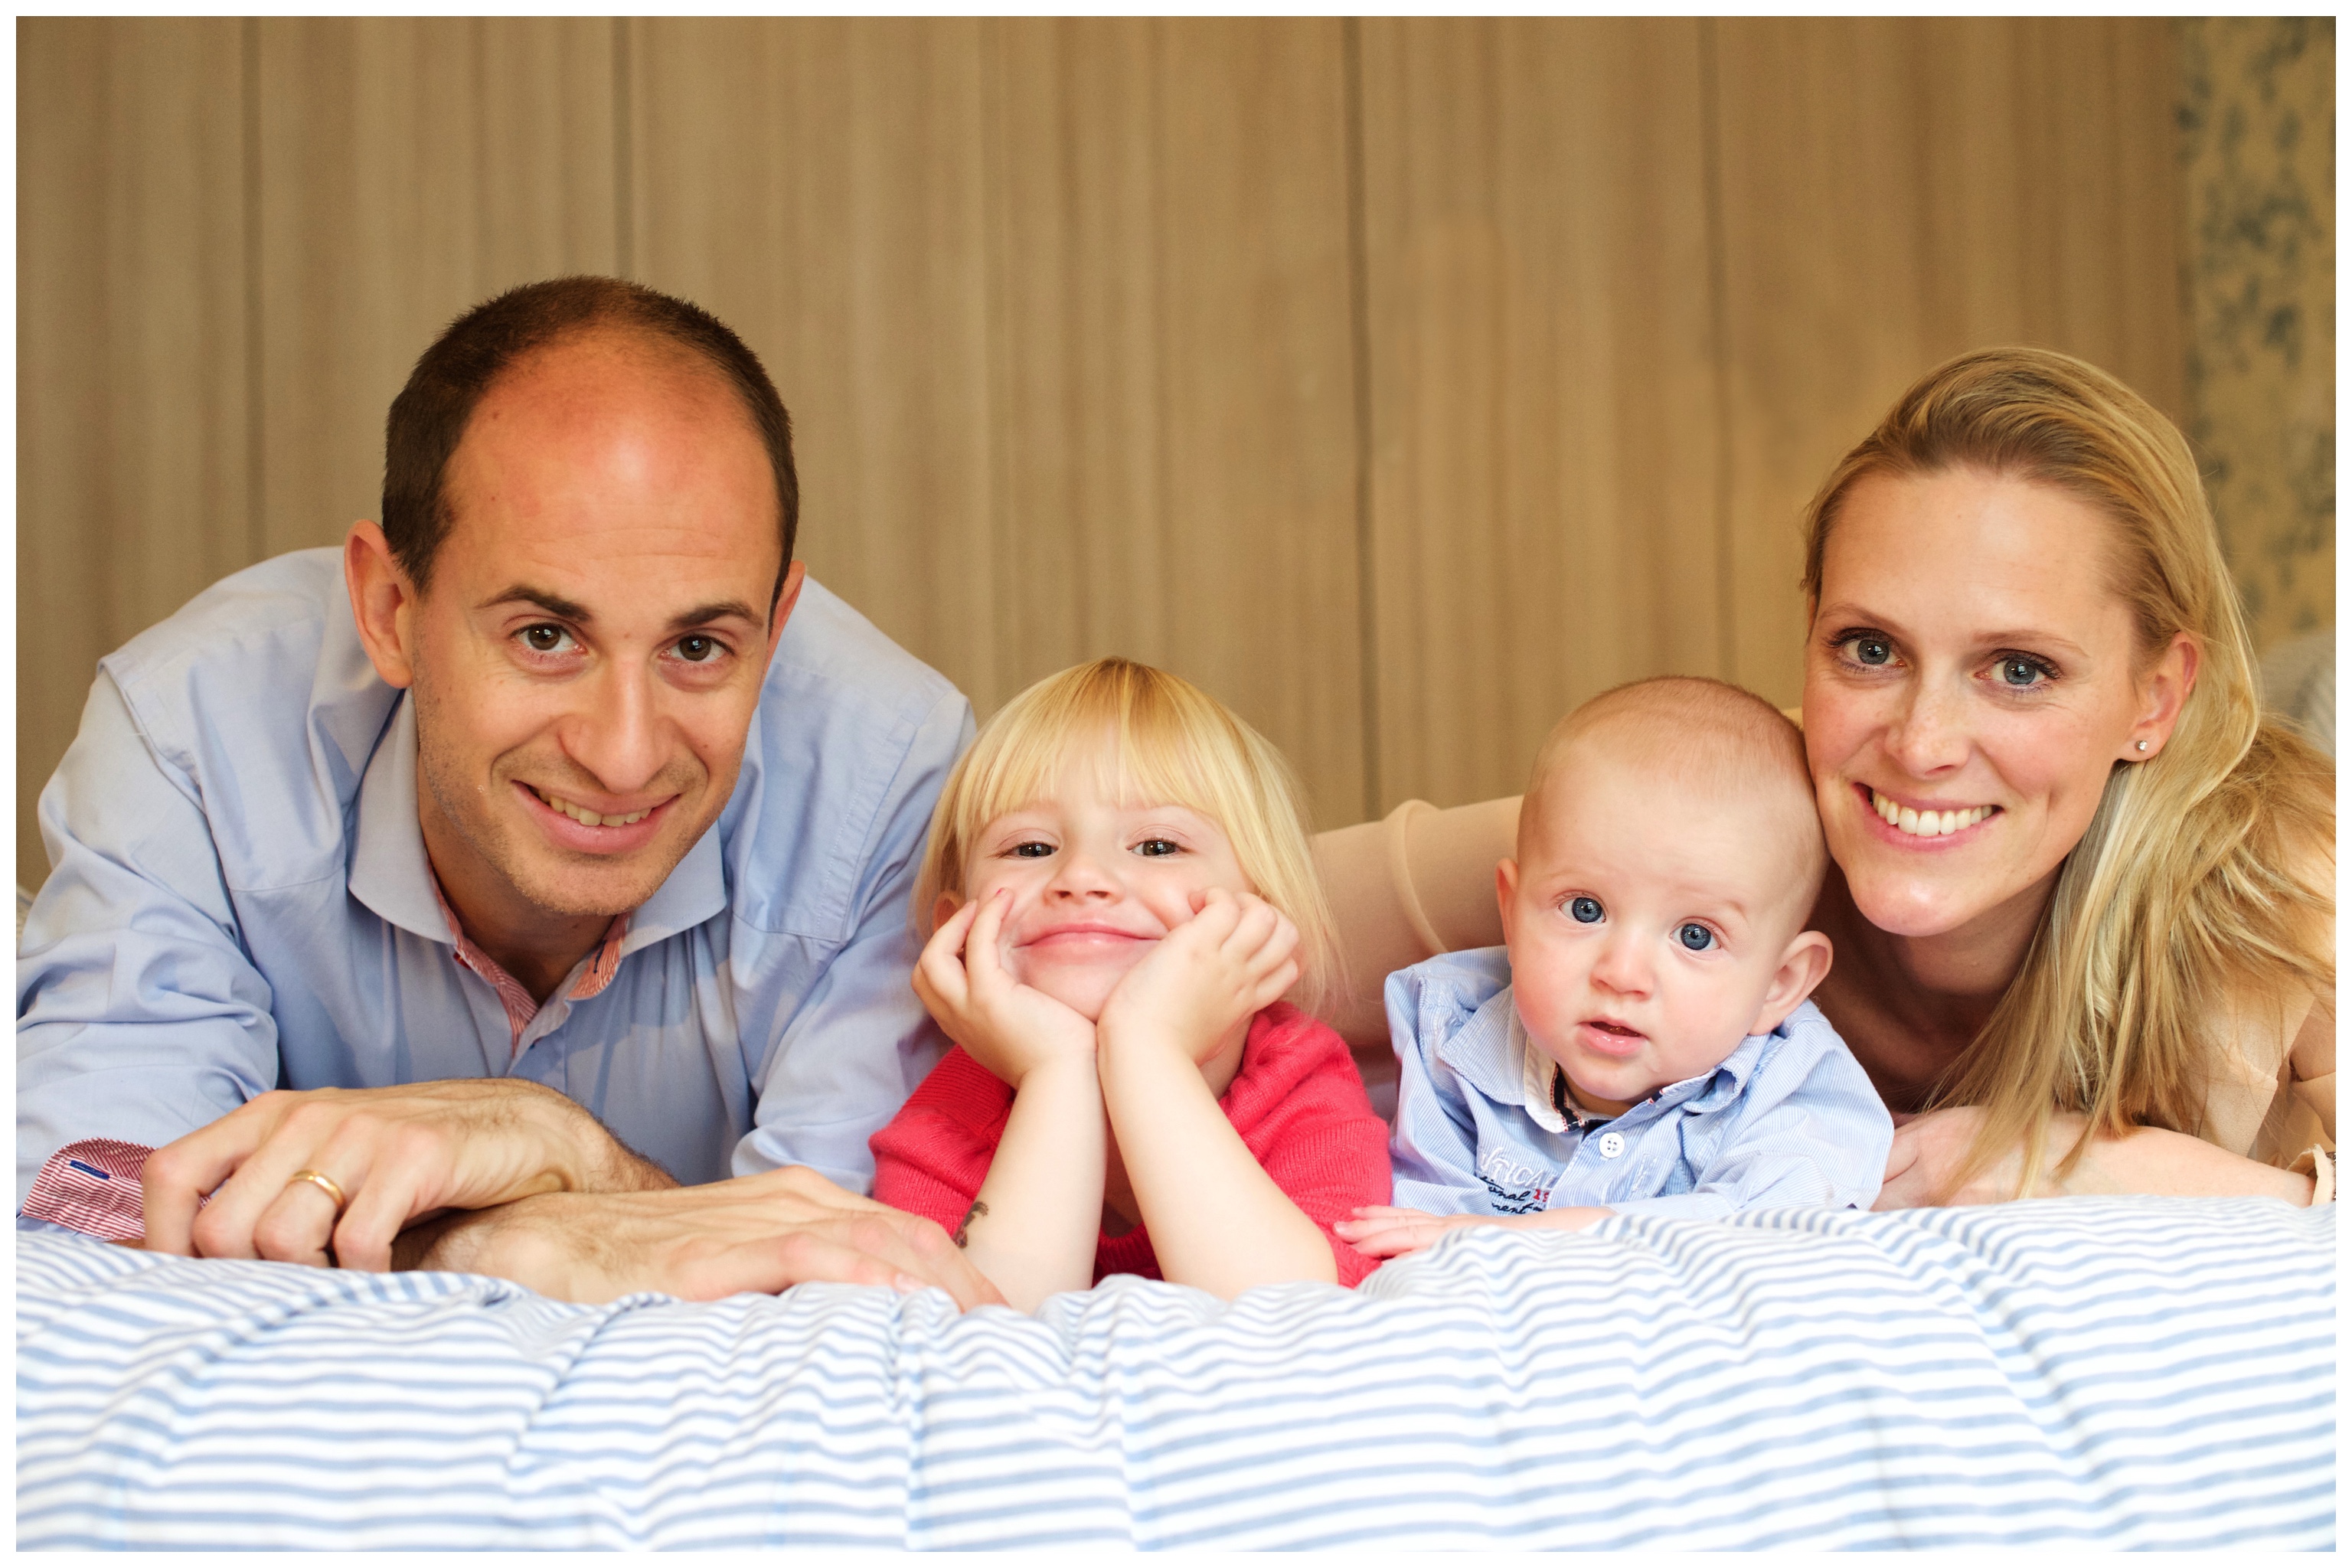 Familjefotografering hemma i lägenhet eller hus ger avslappnade och levande bilder